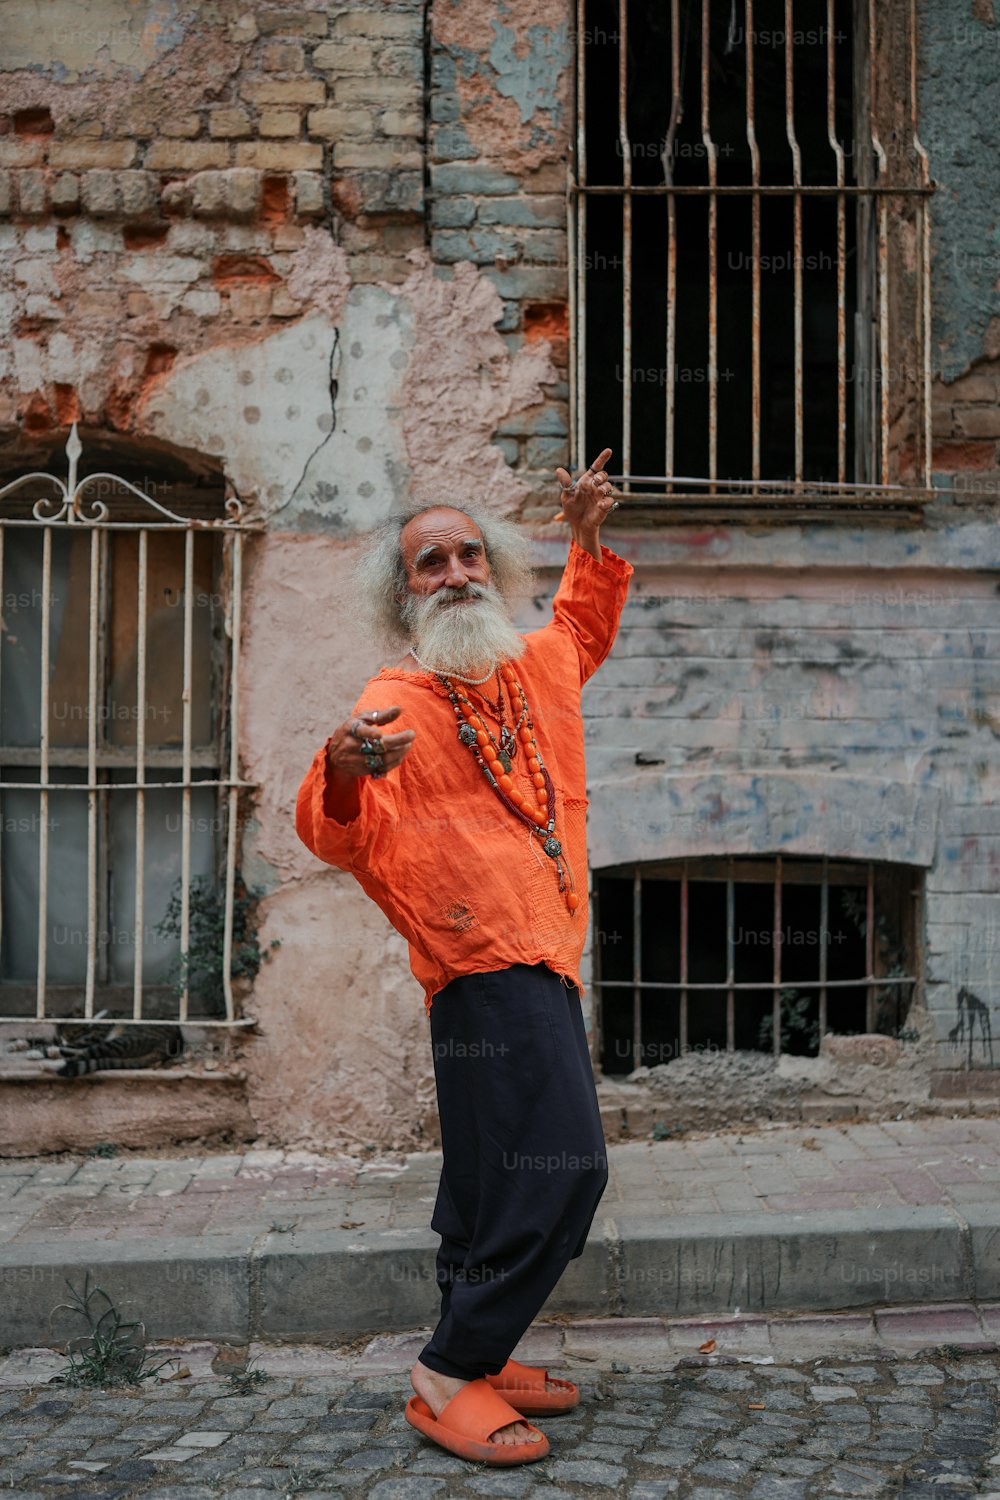 Un uomo con una lunga barba bianca e una camicia arancione